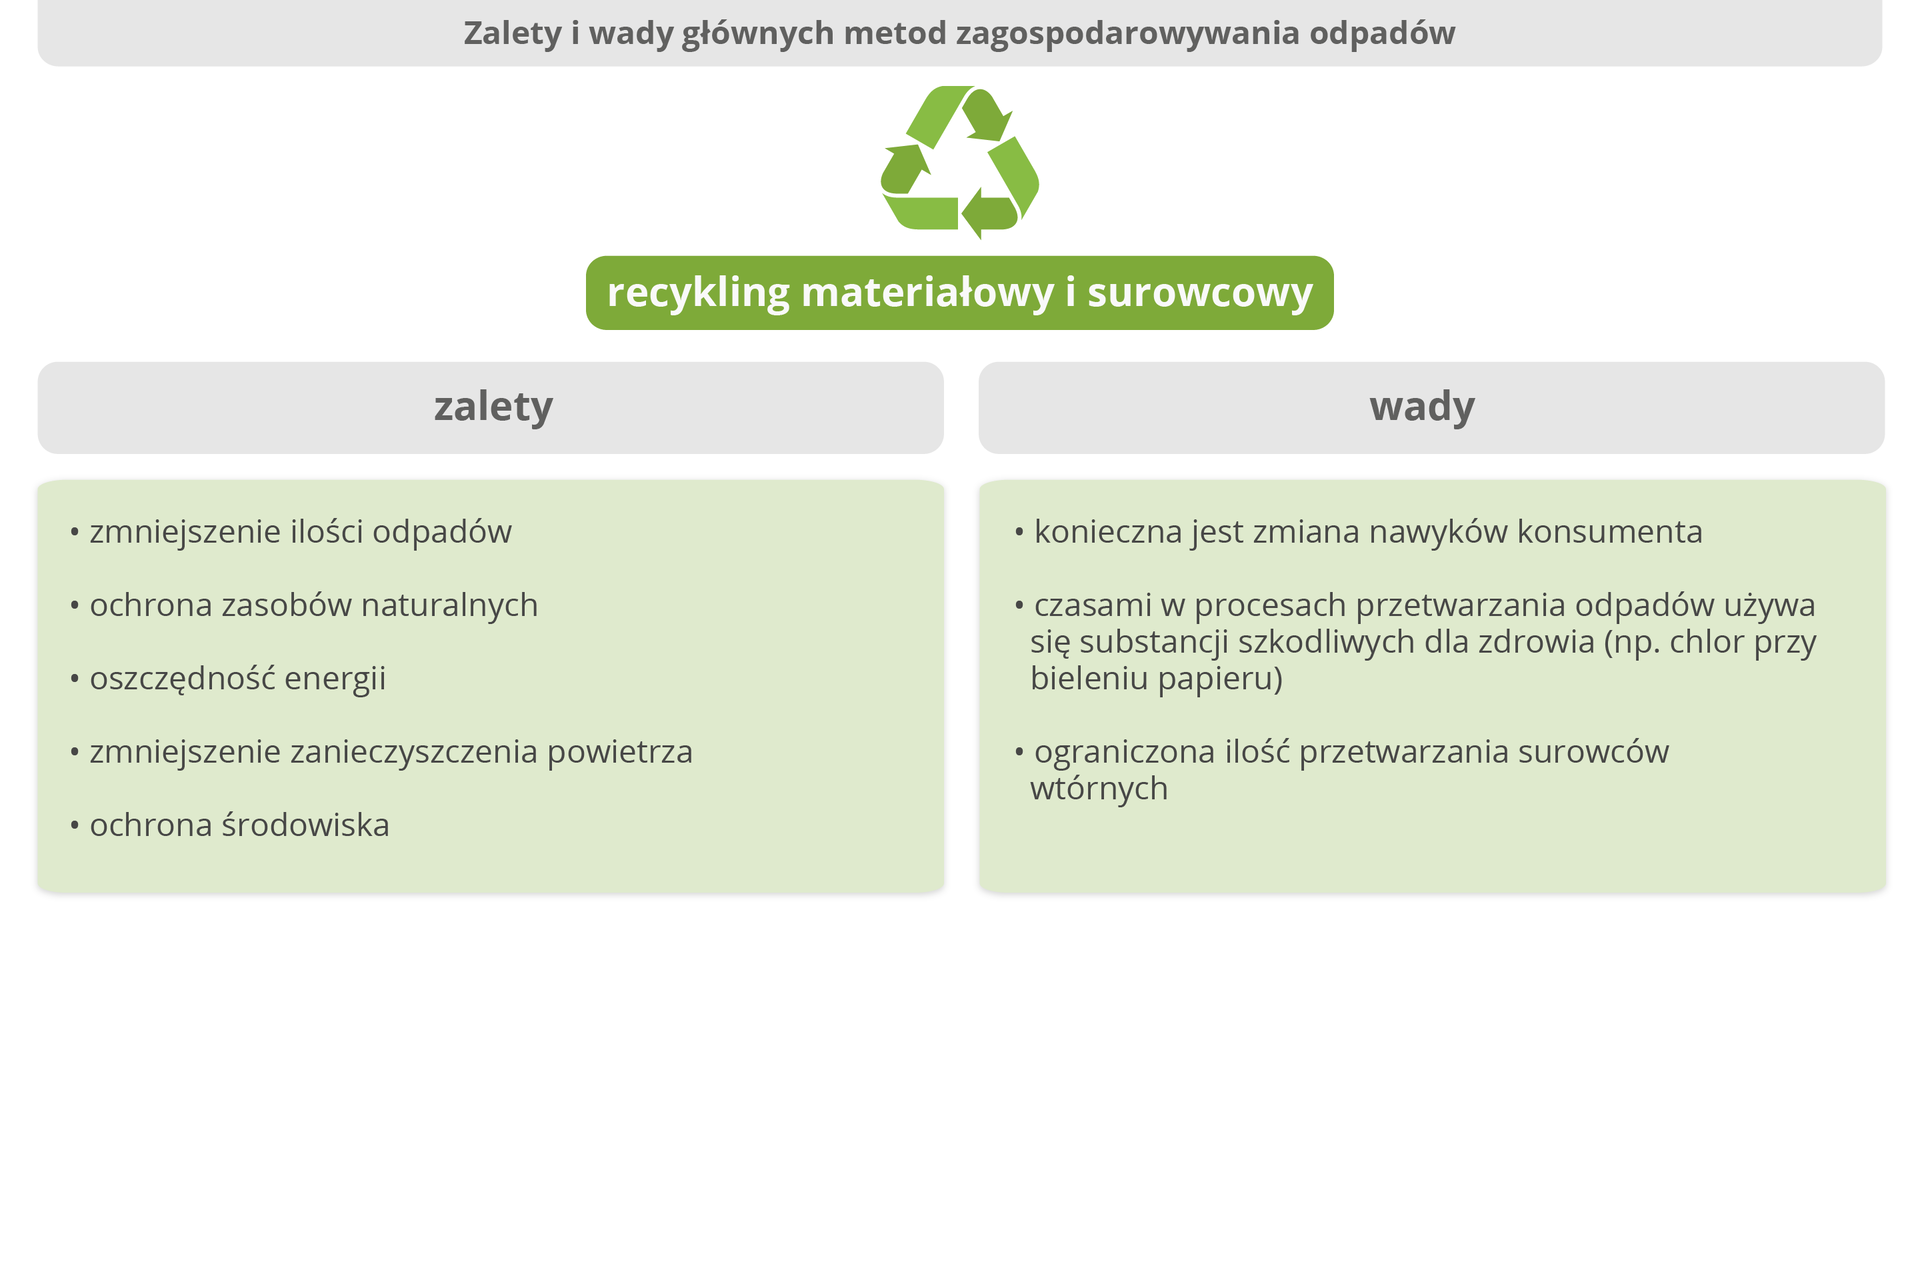 Grafika przedstawiająca zalety oraz wady recyklingu materiałowego oraz surowcowego. Recykling materiałowy i surowcowy. Zalety: zmniejszenie ilości odpadów, ochrona zasobów naturalnych, oszczędność energii, zmniejszenie zanieczyszczenia powietrza, ochrona środowiska. Wady: konieczna jest zmiana nawyków konsumenta, czasami w procesach przetwarzania odpadów używa się substancji szkodliwych dla zdrowia (np. chlor przy bieleniu papieru), ograniczona ilość przetwarzania surowców wtórnych. 